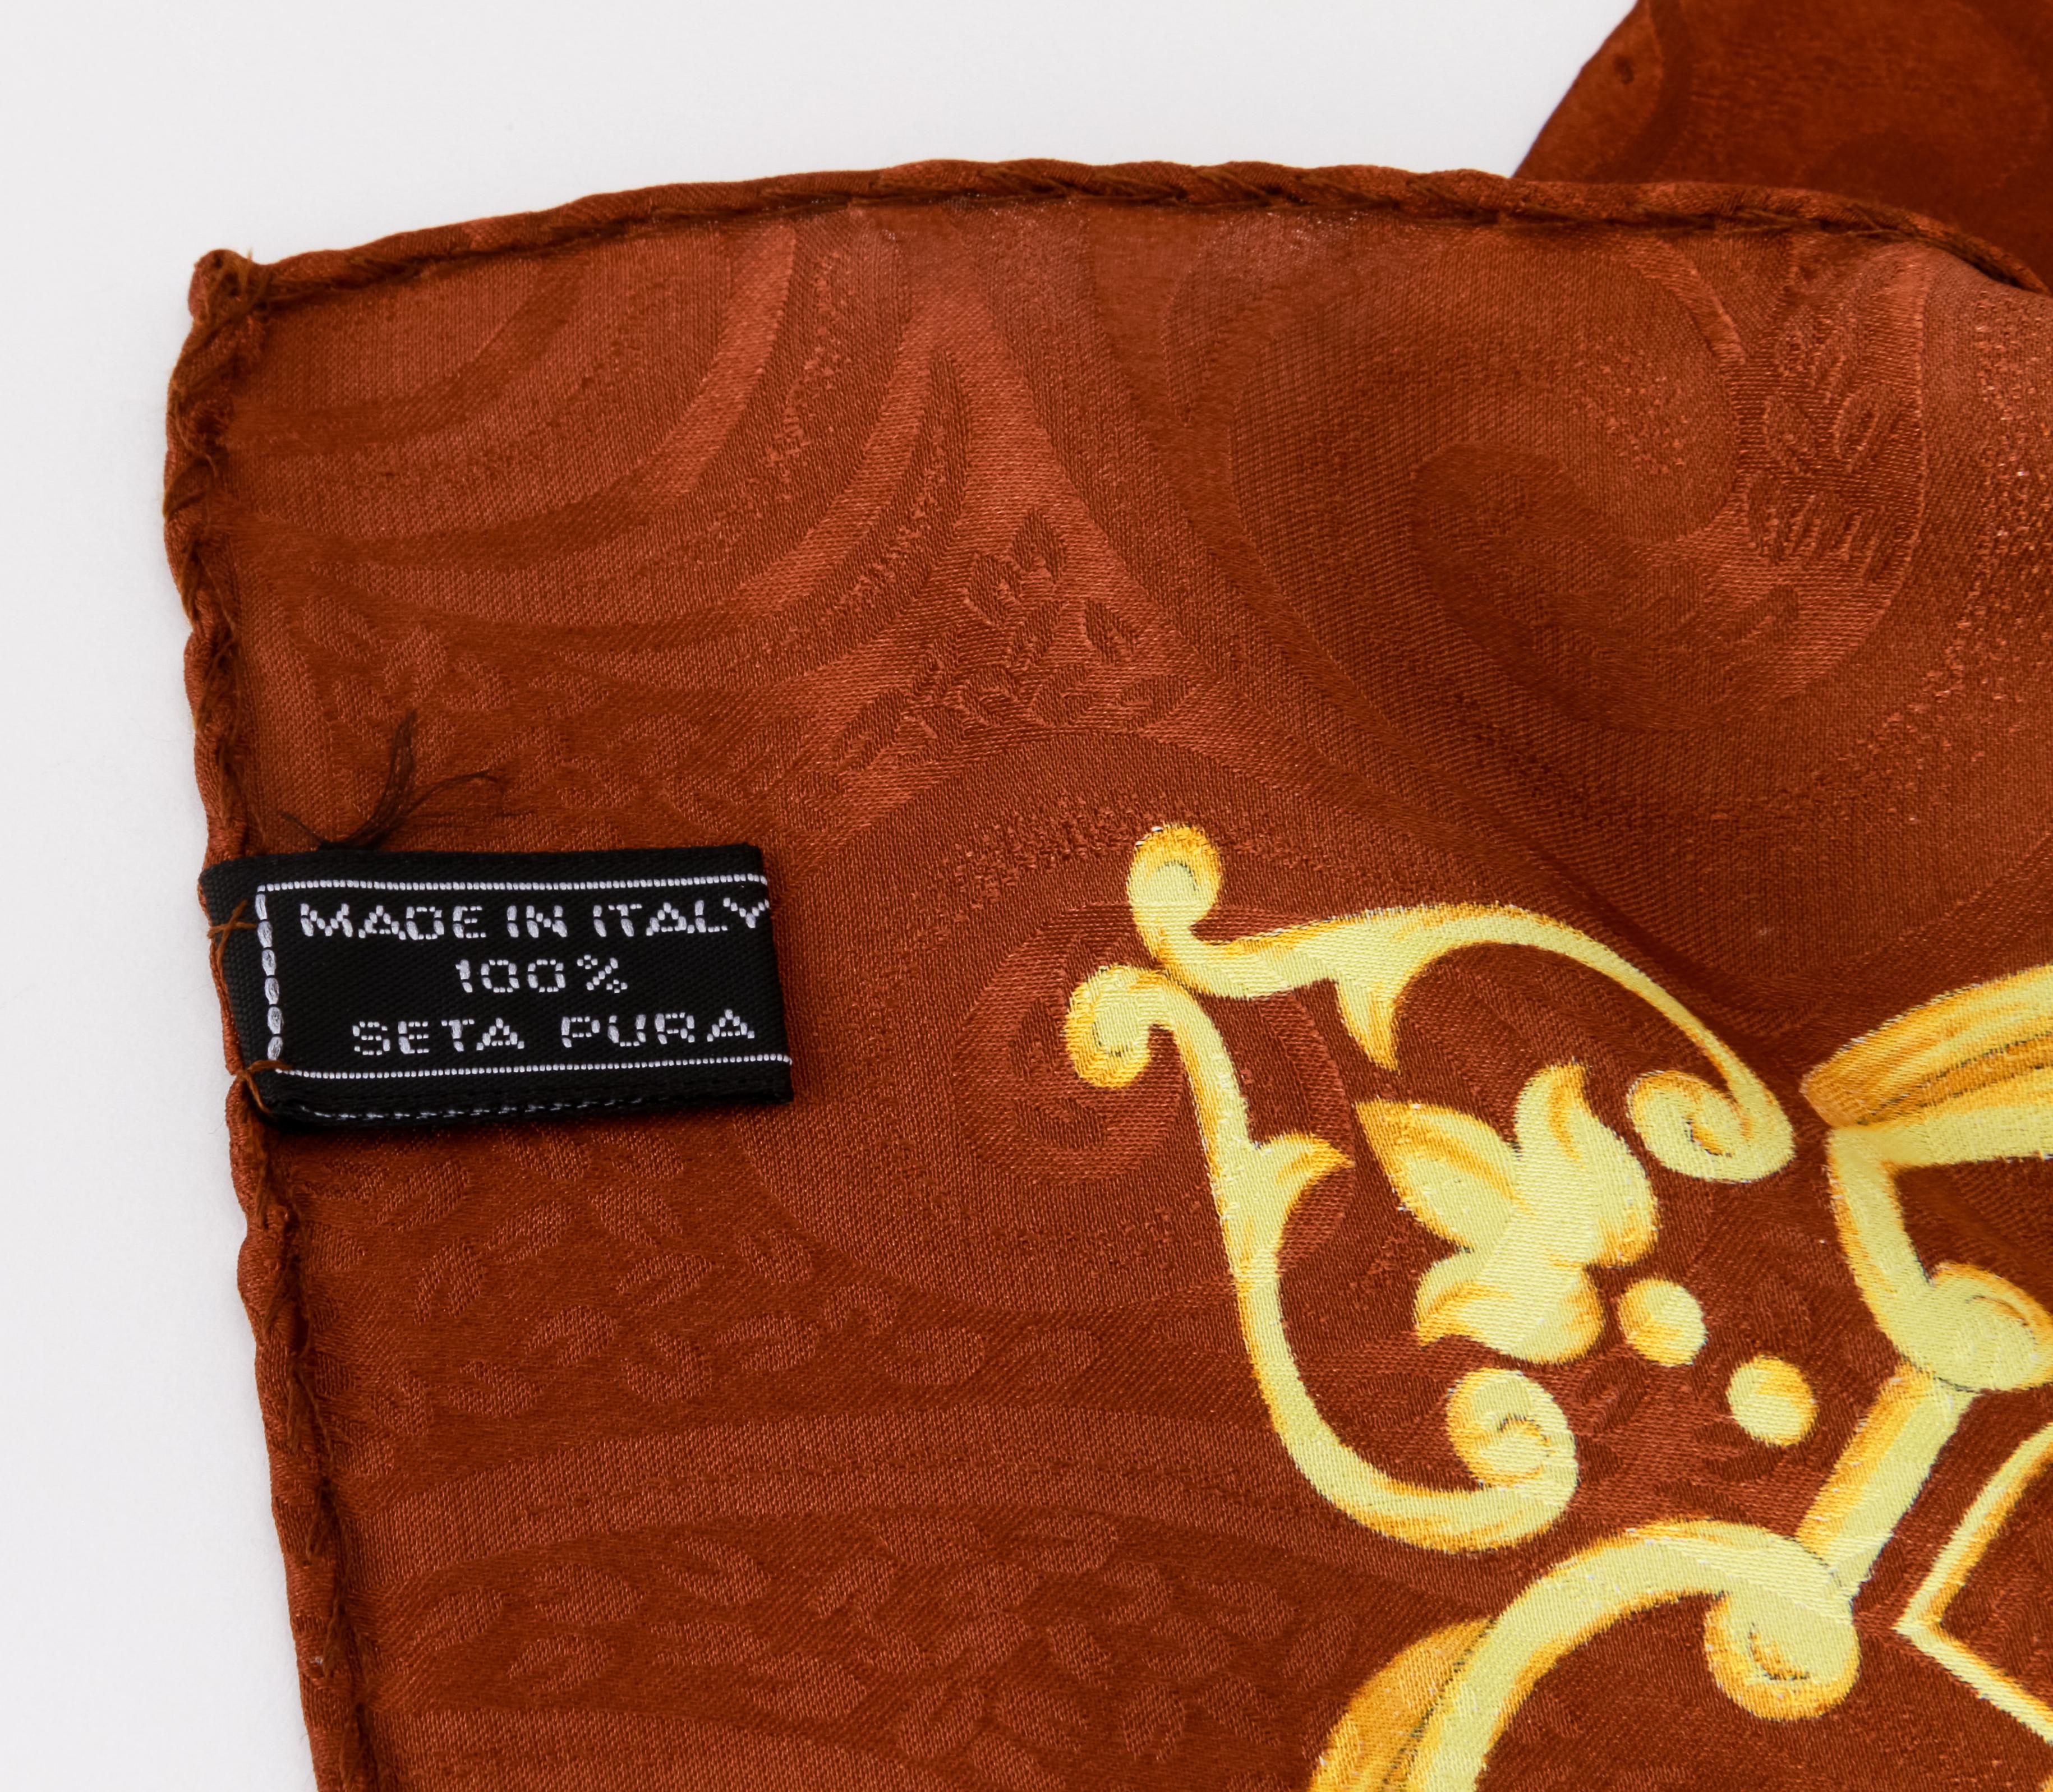 Écharpe en soie vintage des années 80 de Basile avec motifs de rubans, combinaison de marron et de jaune. L'étiquette d'entretien est encore attachée. Bords roulés à la main.